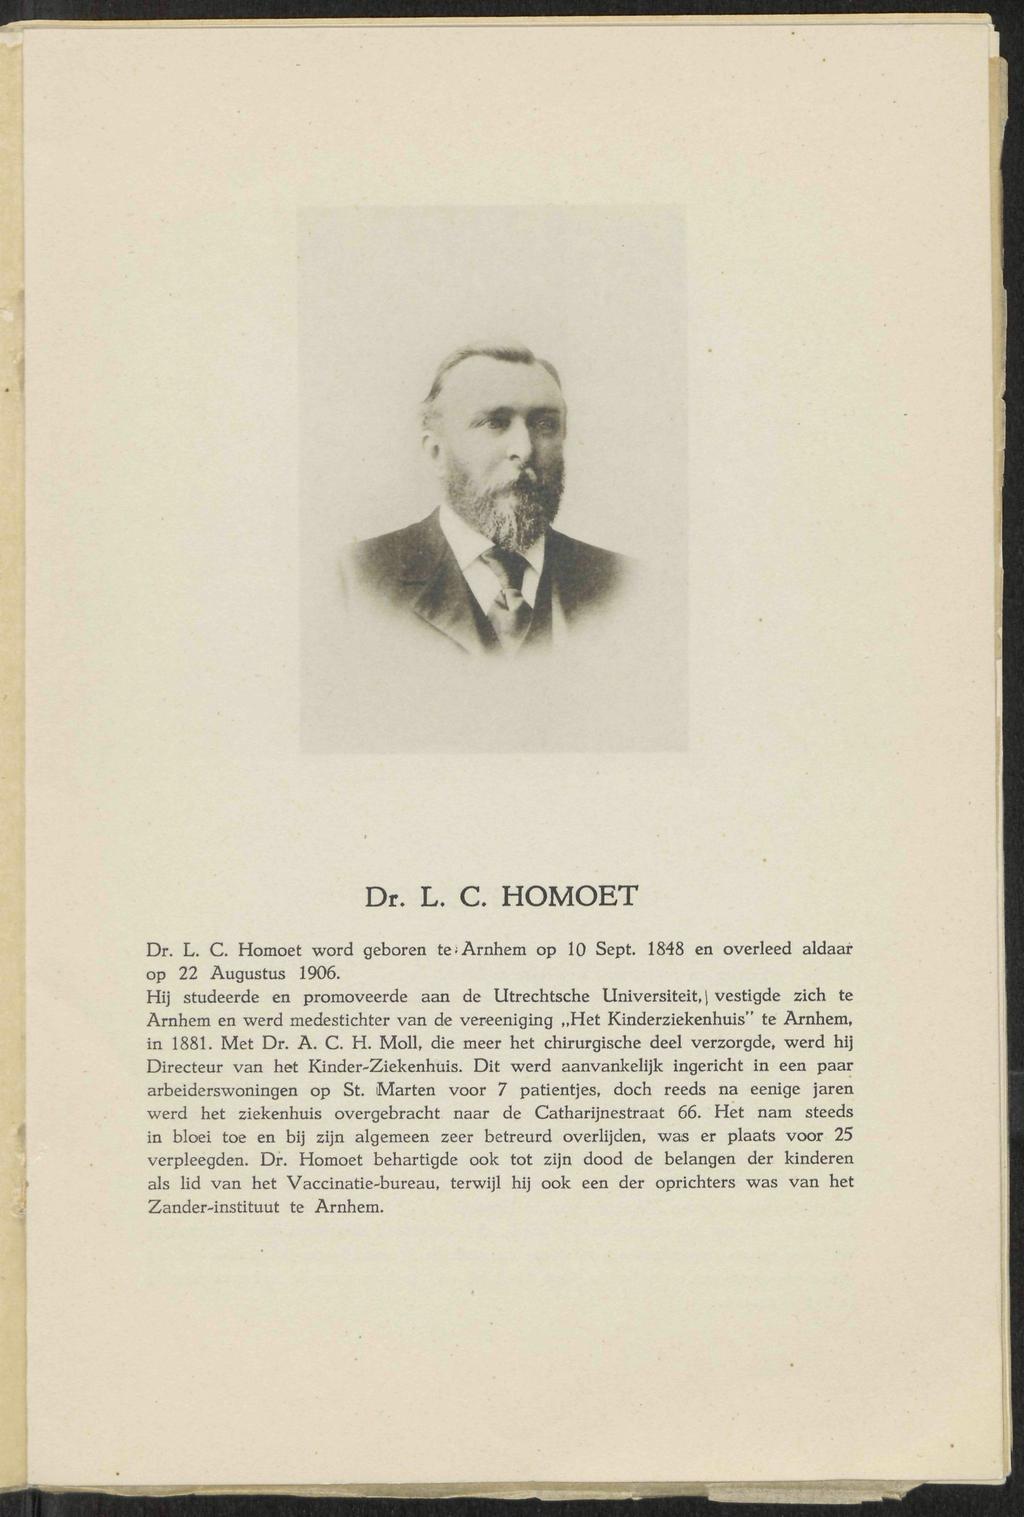 Dr. L. C. HOMOET Dr. L. C. Homoet word geboren te Arnhem op 10 Sept. 1848 en overleed aldaar op 22 Augustus 1906.